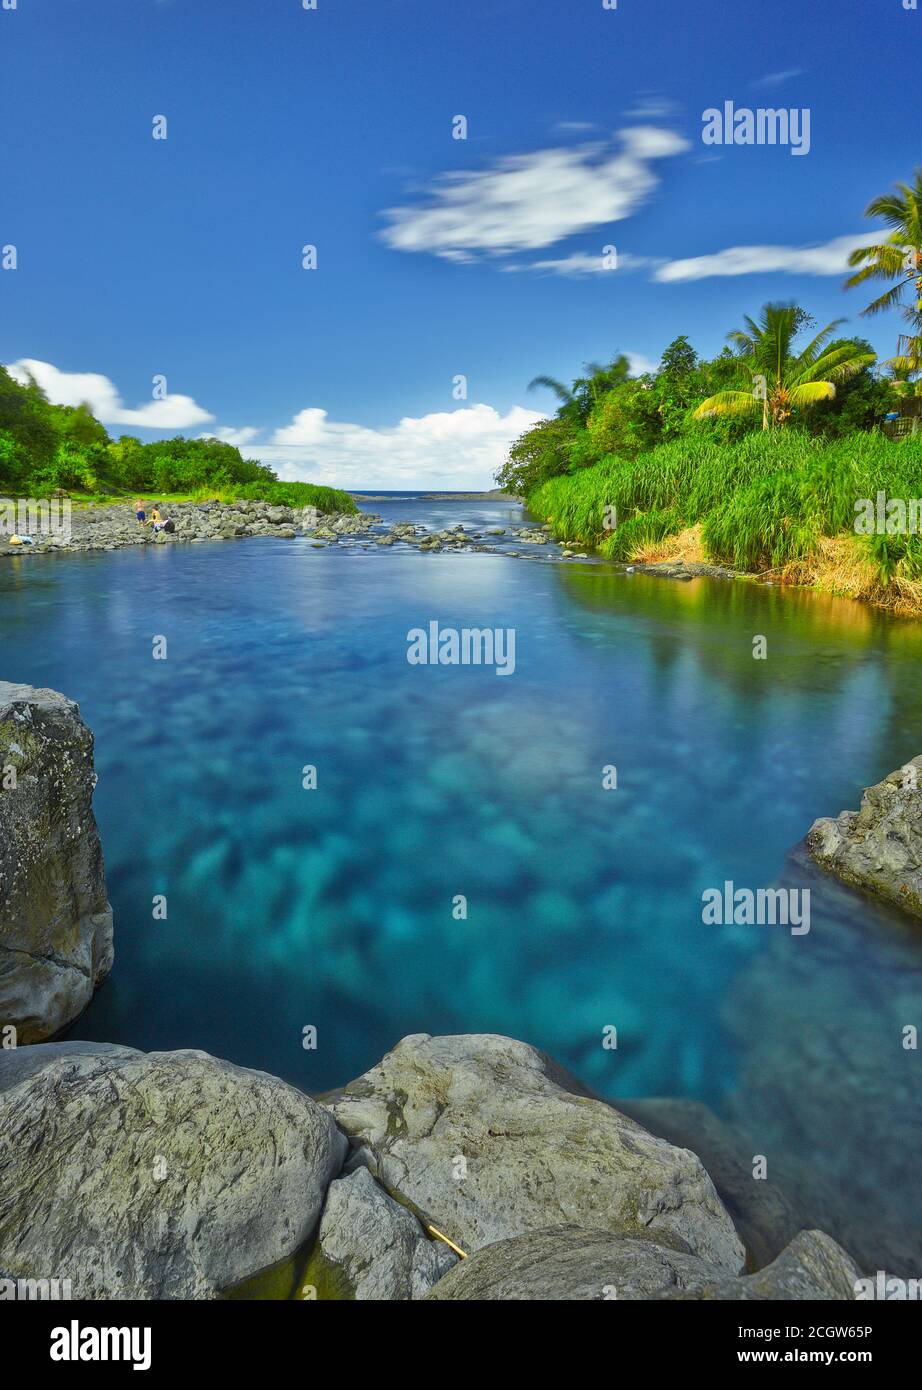 Bassin Bleu, site de baignade du bassin bleu à Saint-Anne et son eau bleue  et limpide - île de la Réunion Photo Stock - Alamy